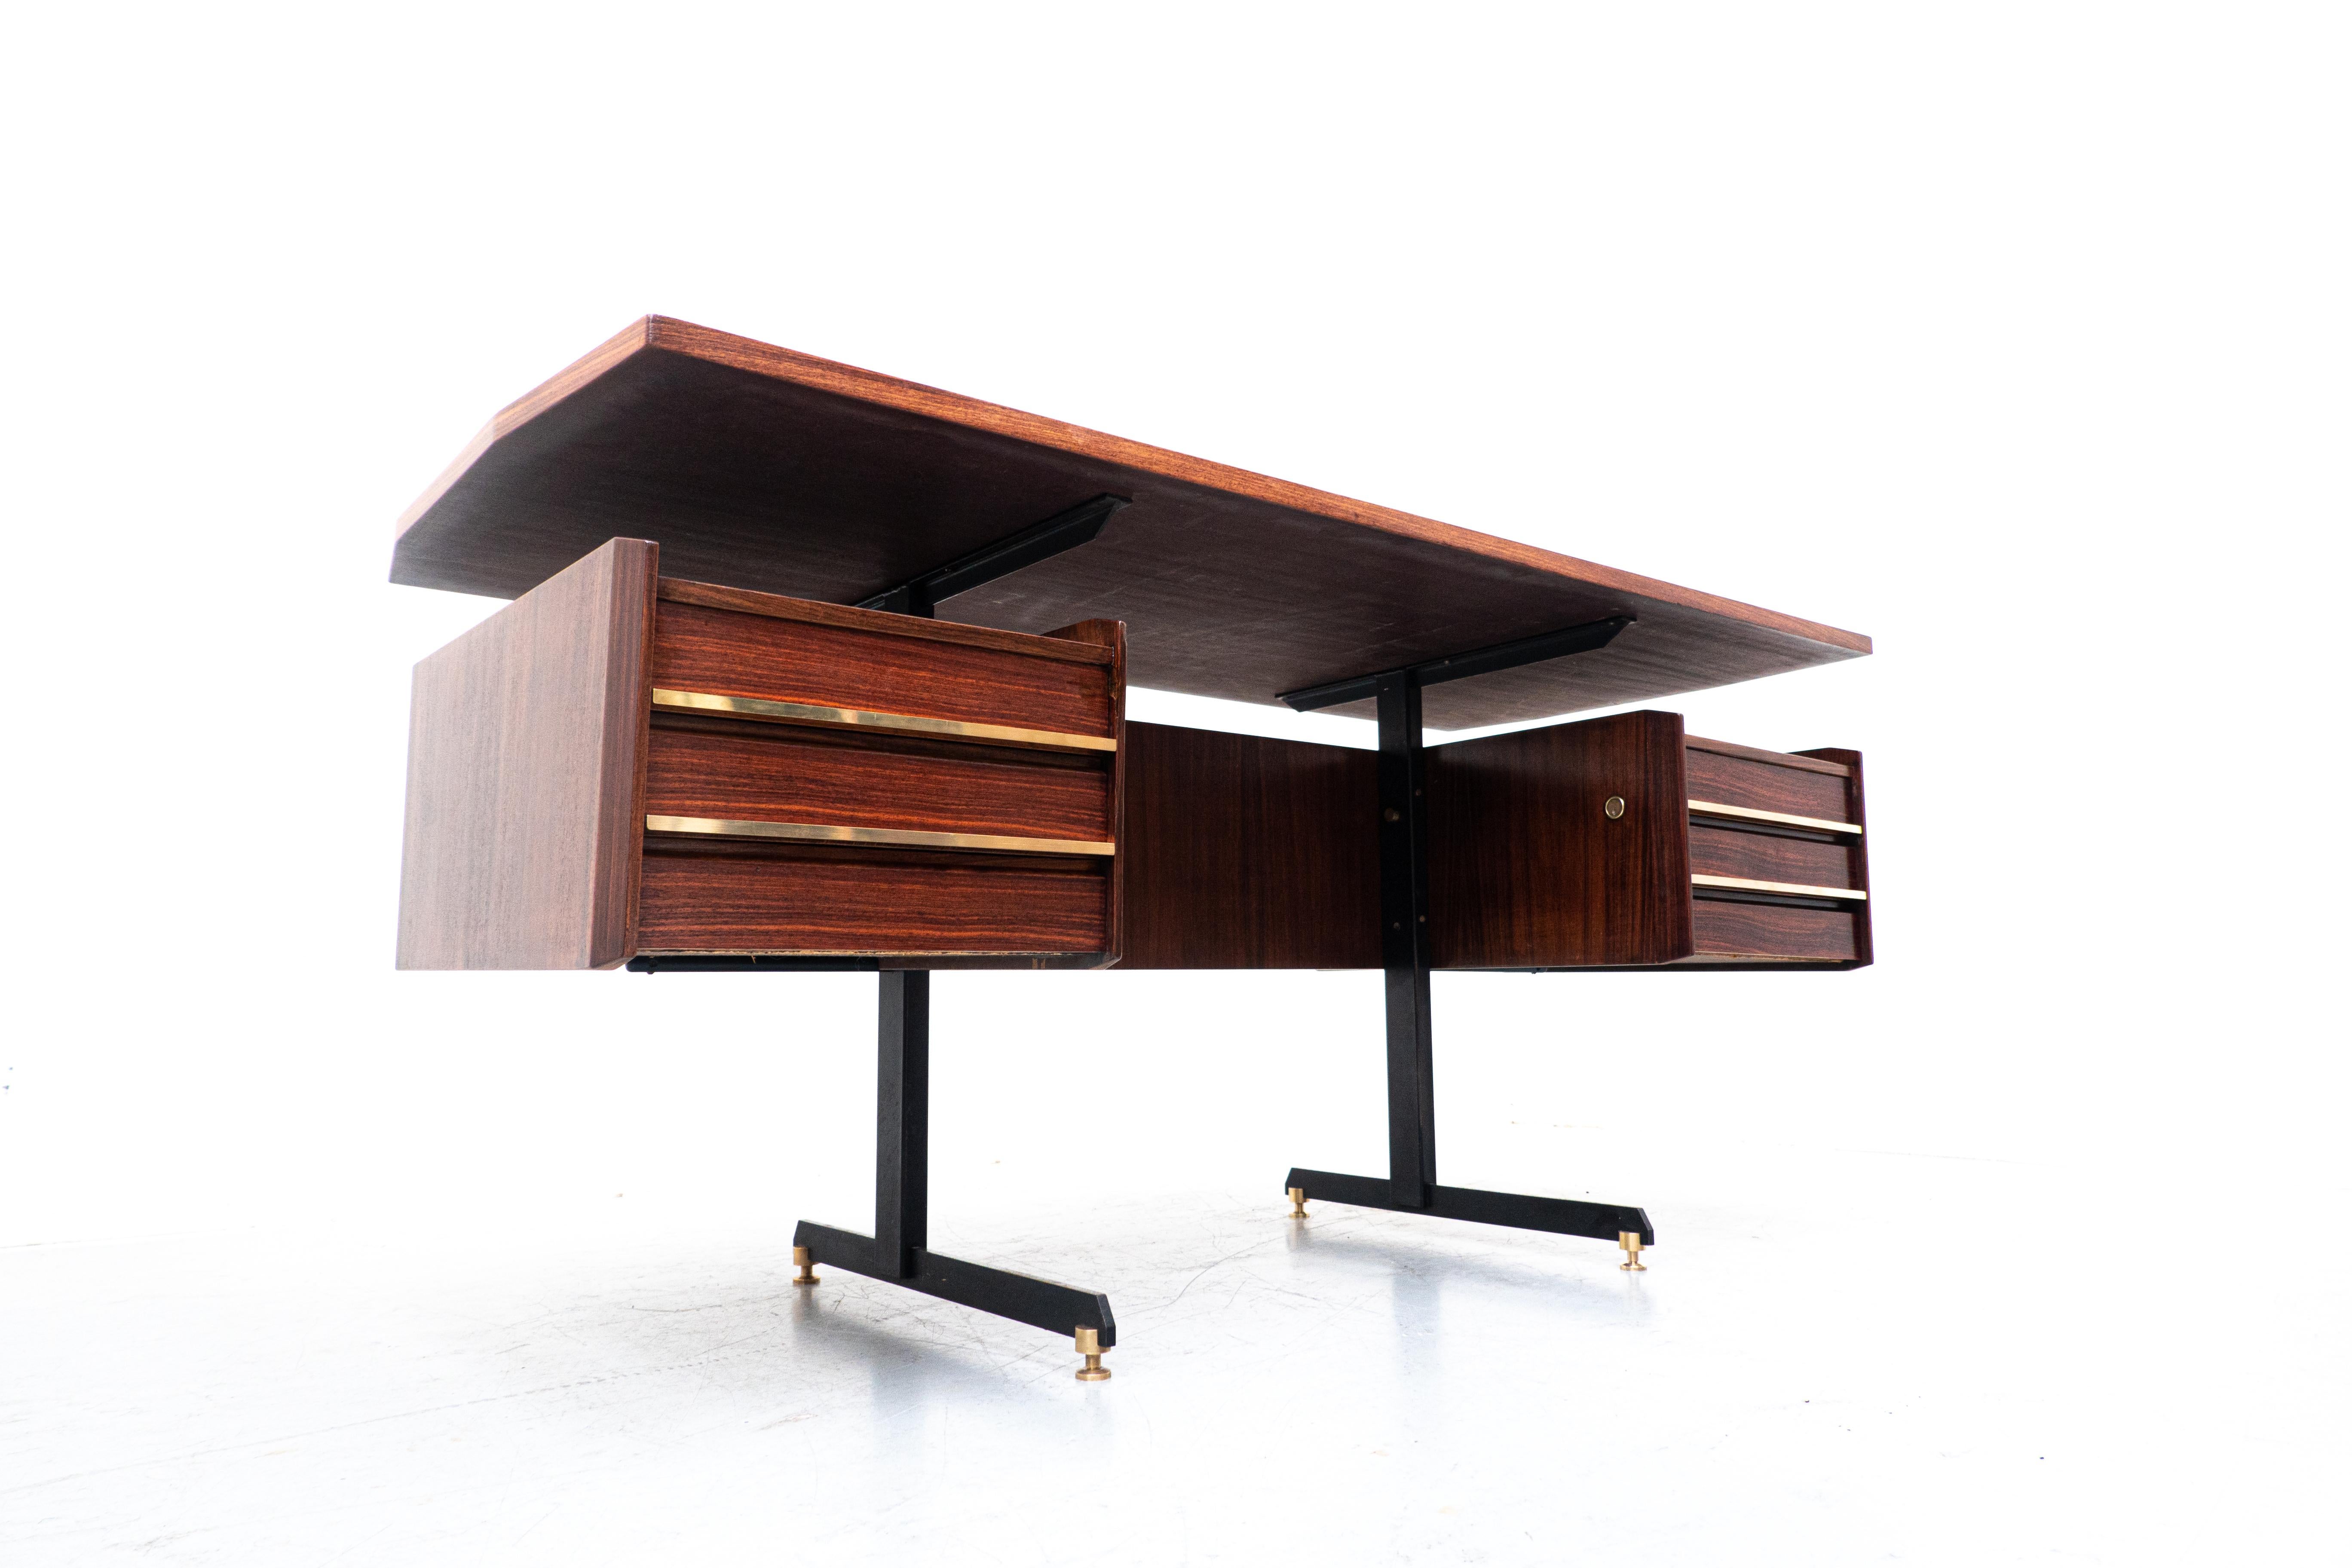 Mid-Century Modern Italian wooden desk, 1960s
European.